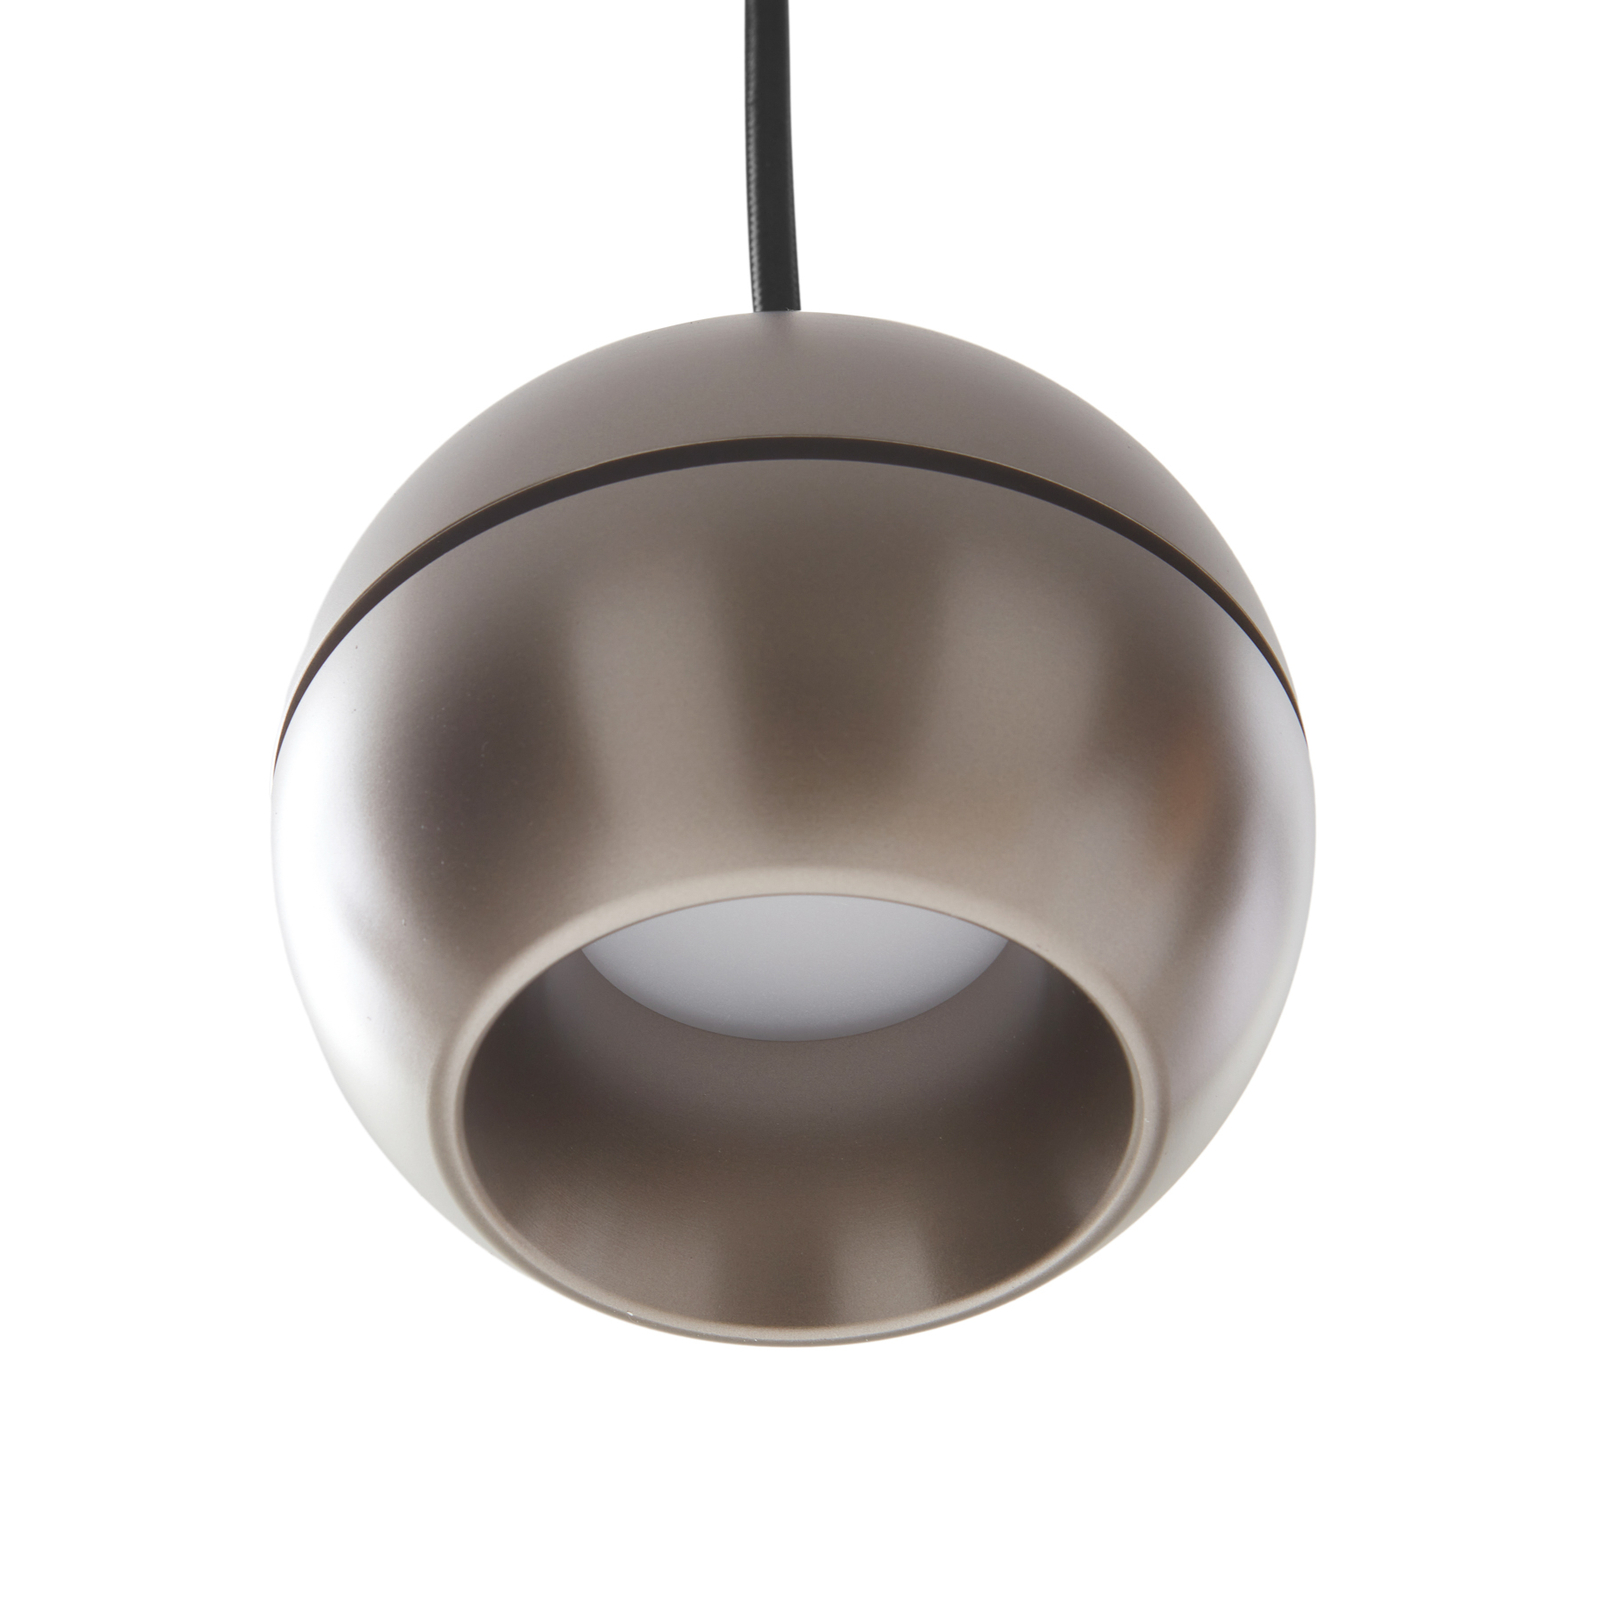 Lucande LED hanglamp Plarion, nikkelkleurig, aluminium, Ø 9 cm